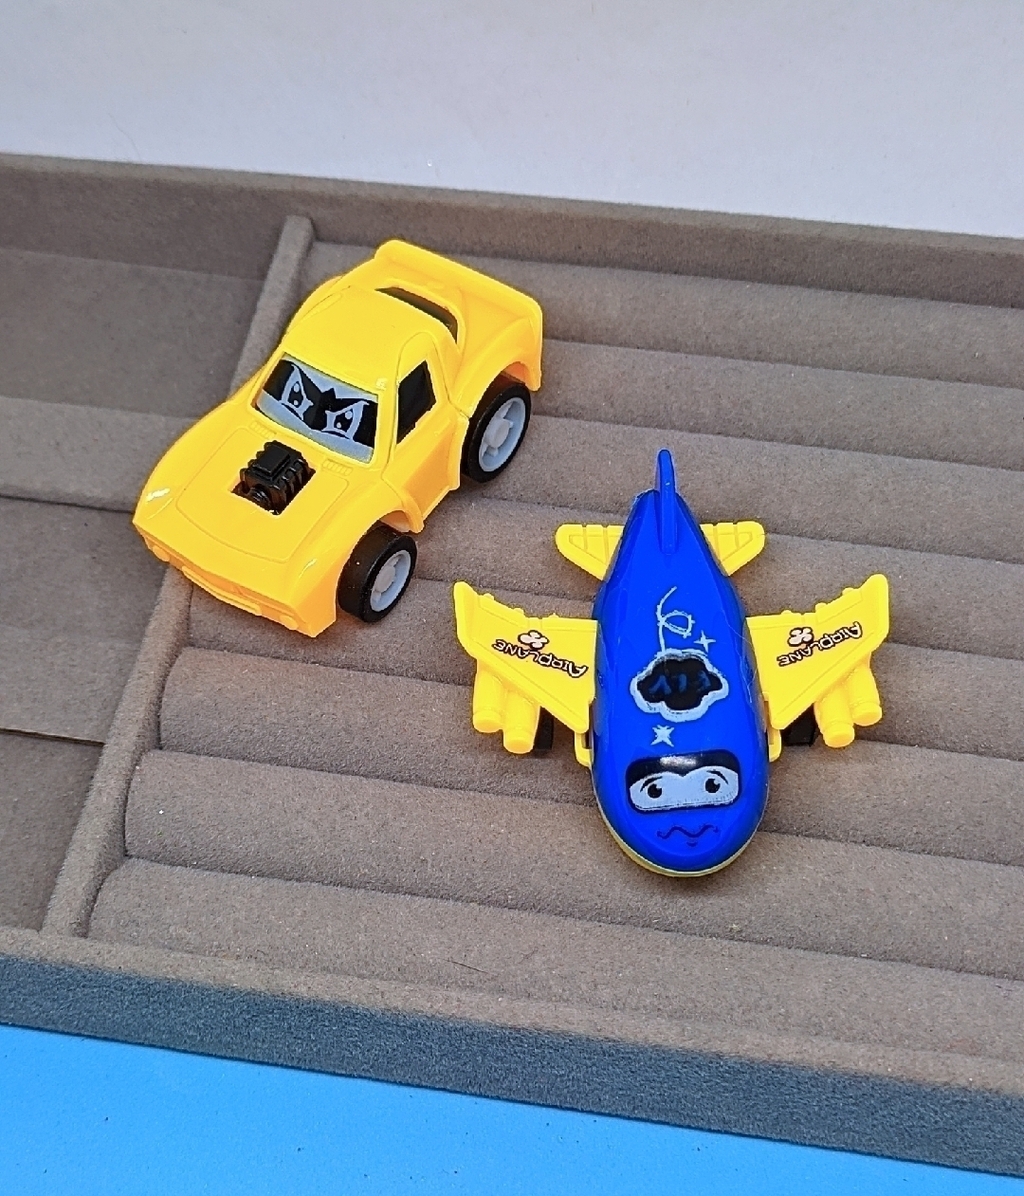 Brinquedo Kit Carrinhos Infantil Meninos Sortidos Carros Corrida 6